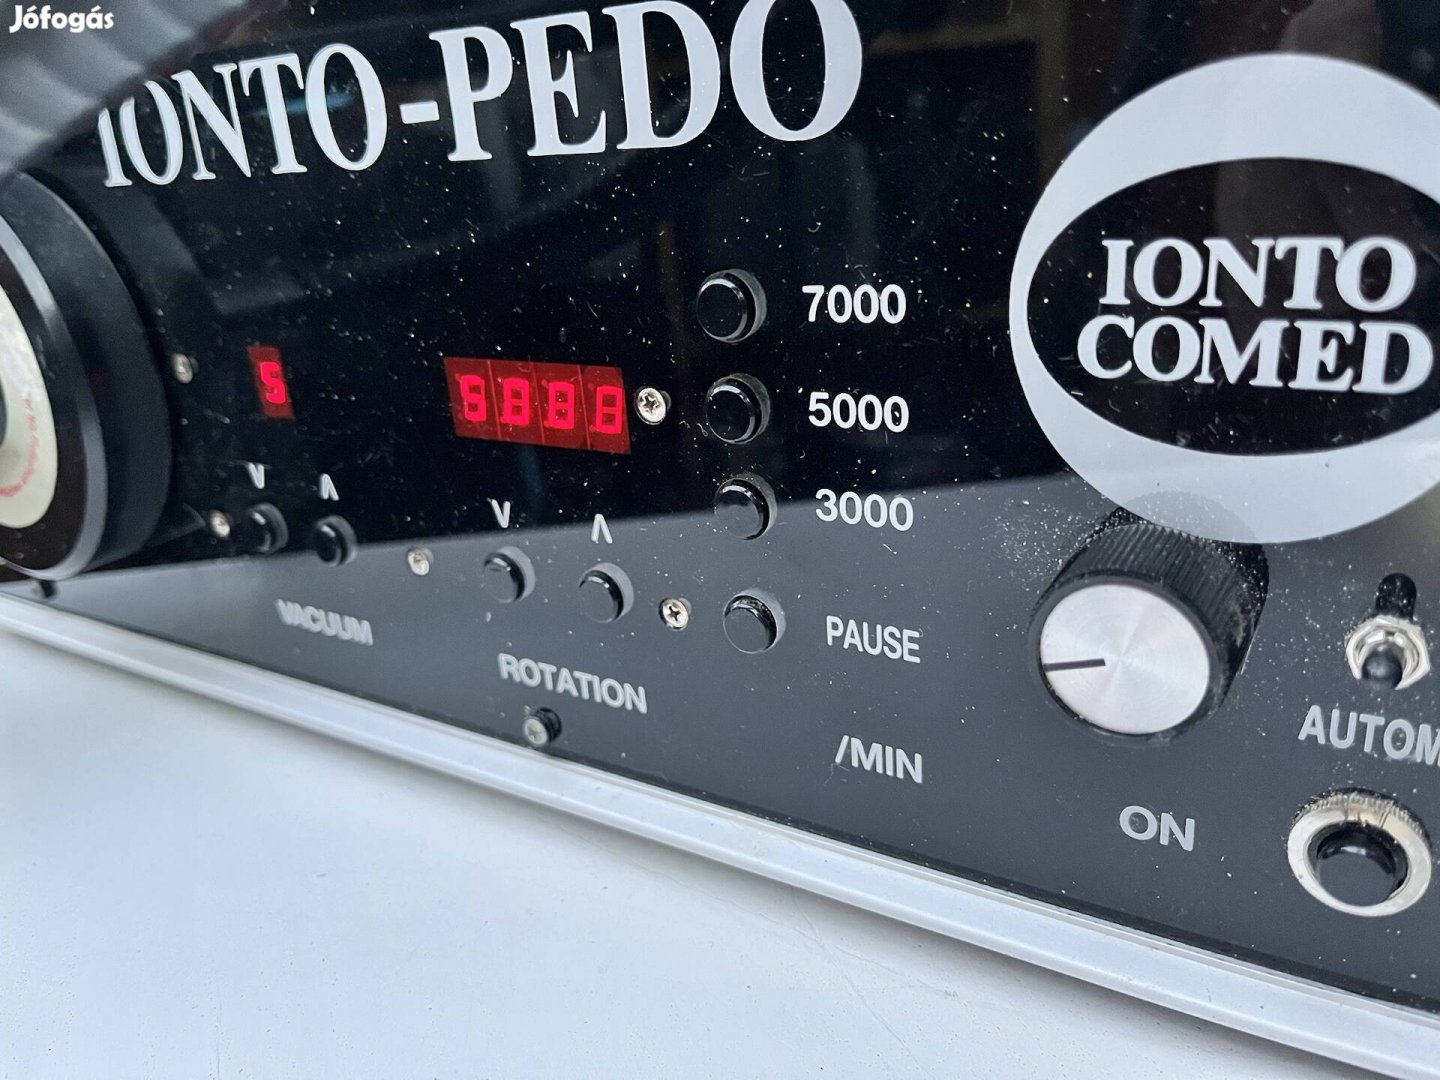 Ionto-Pedo Ionto Comed lábápoló gép pedikür vintage retro müködik 